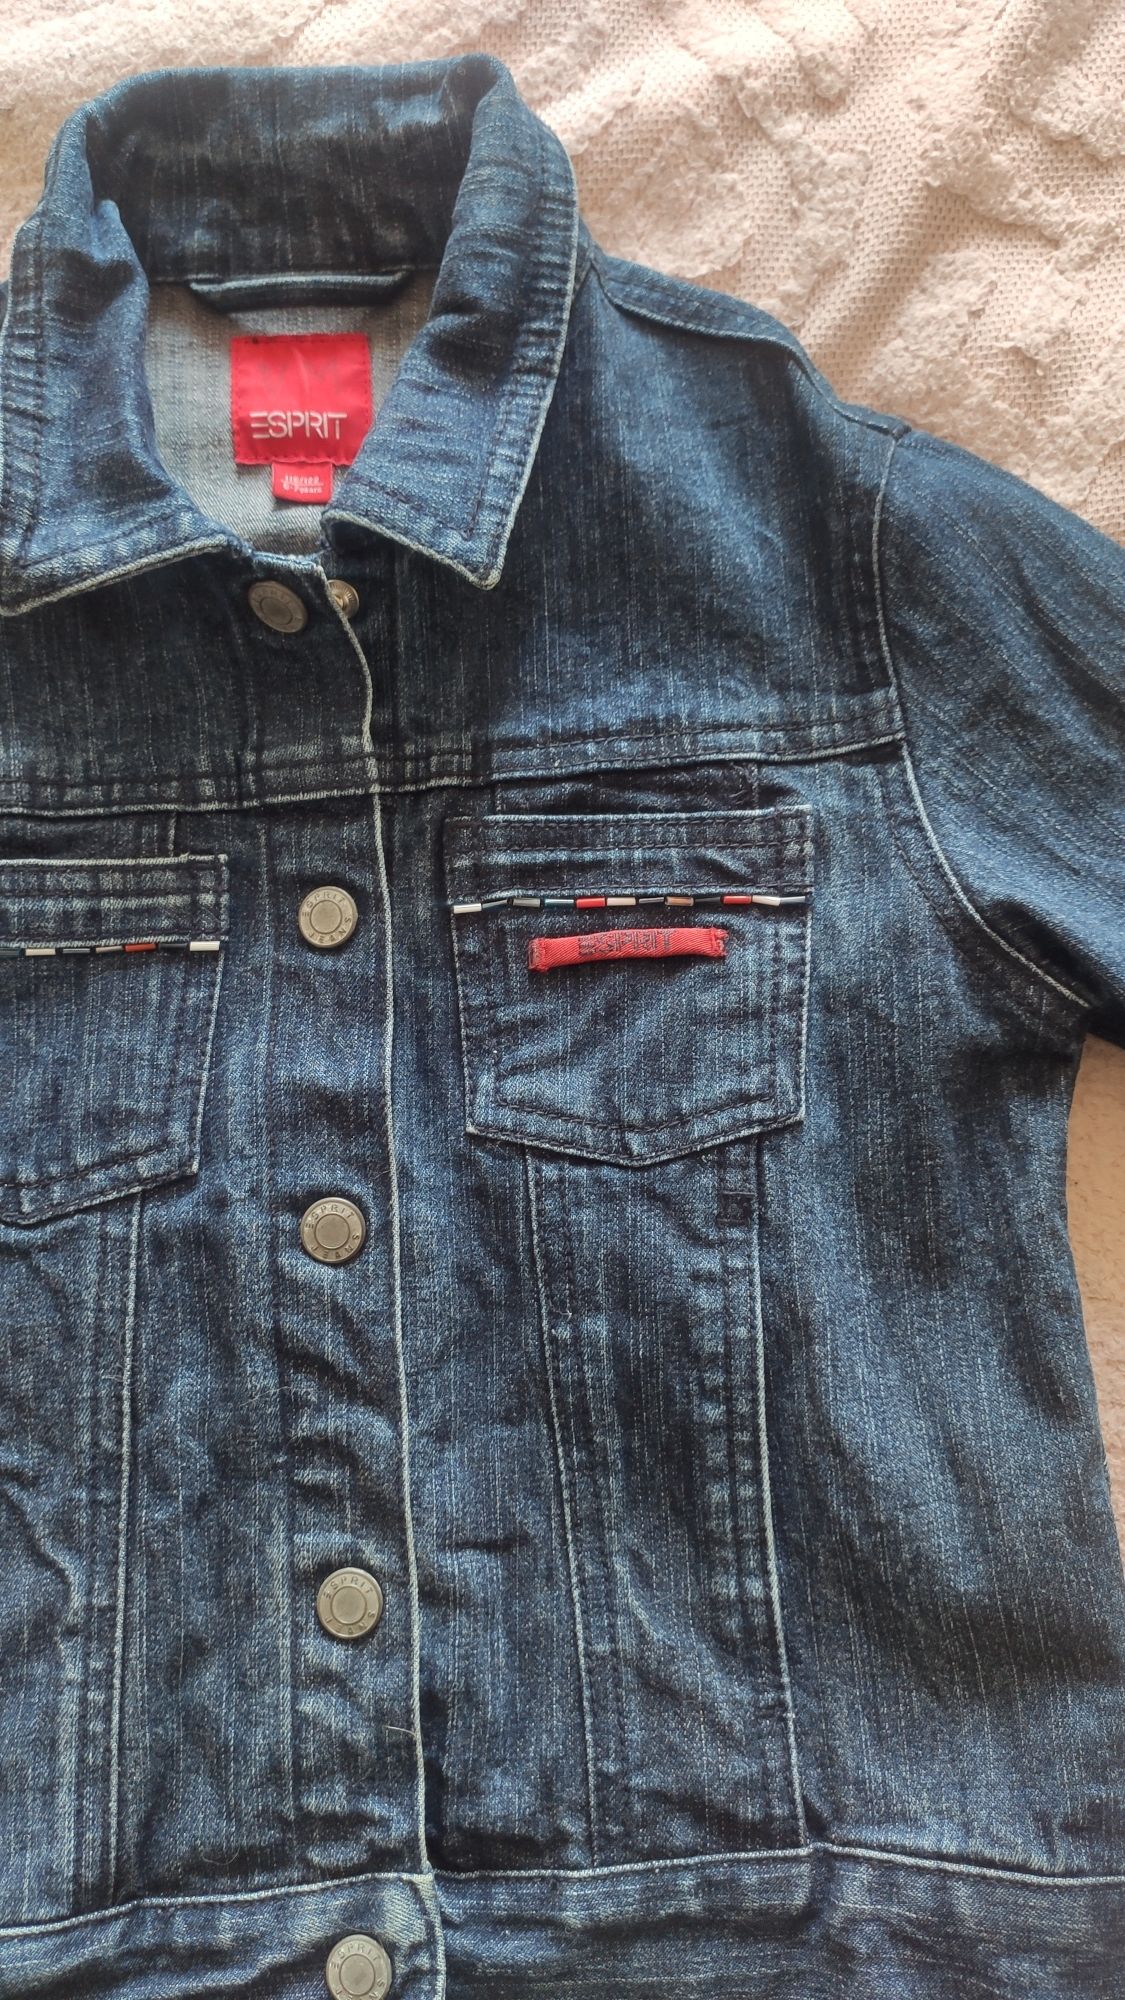 Фирменная джинсовая куртка, пиджак на девочку 6-7 лет в хорошем состоя